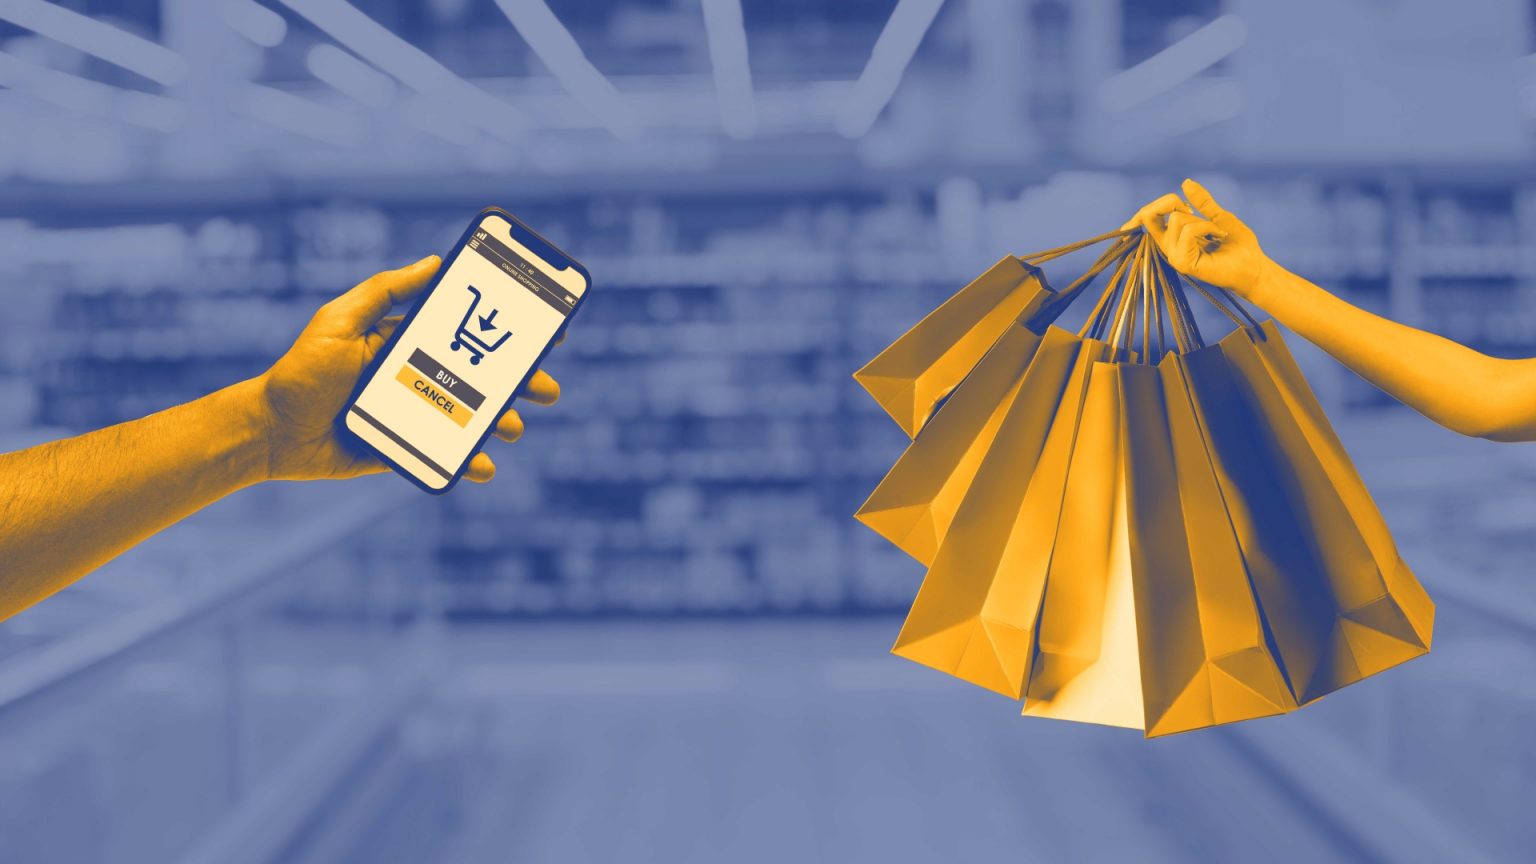 Is e-commerce echt een bedreiging voor fysieke winkels?